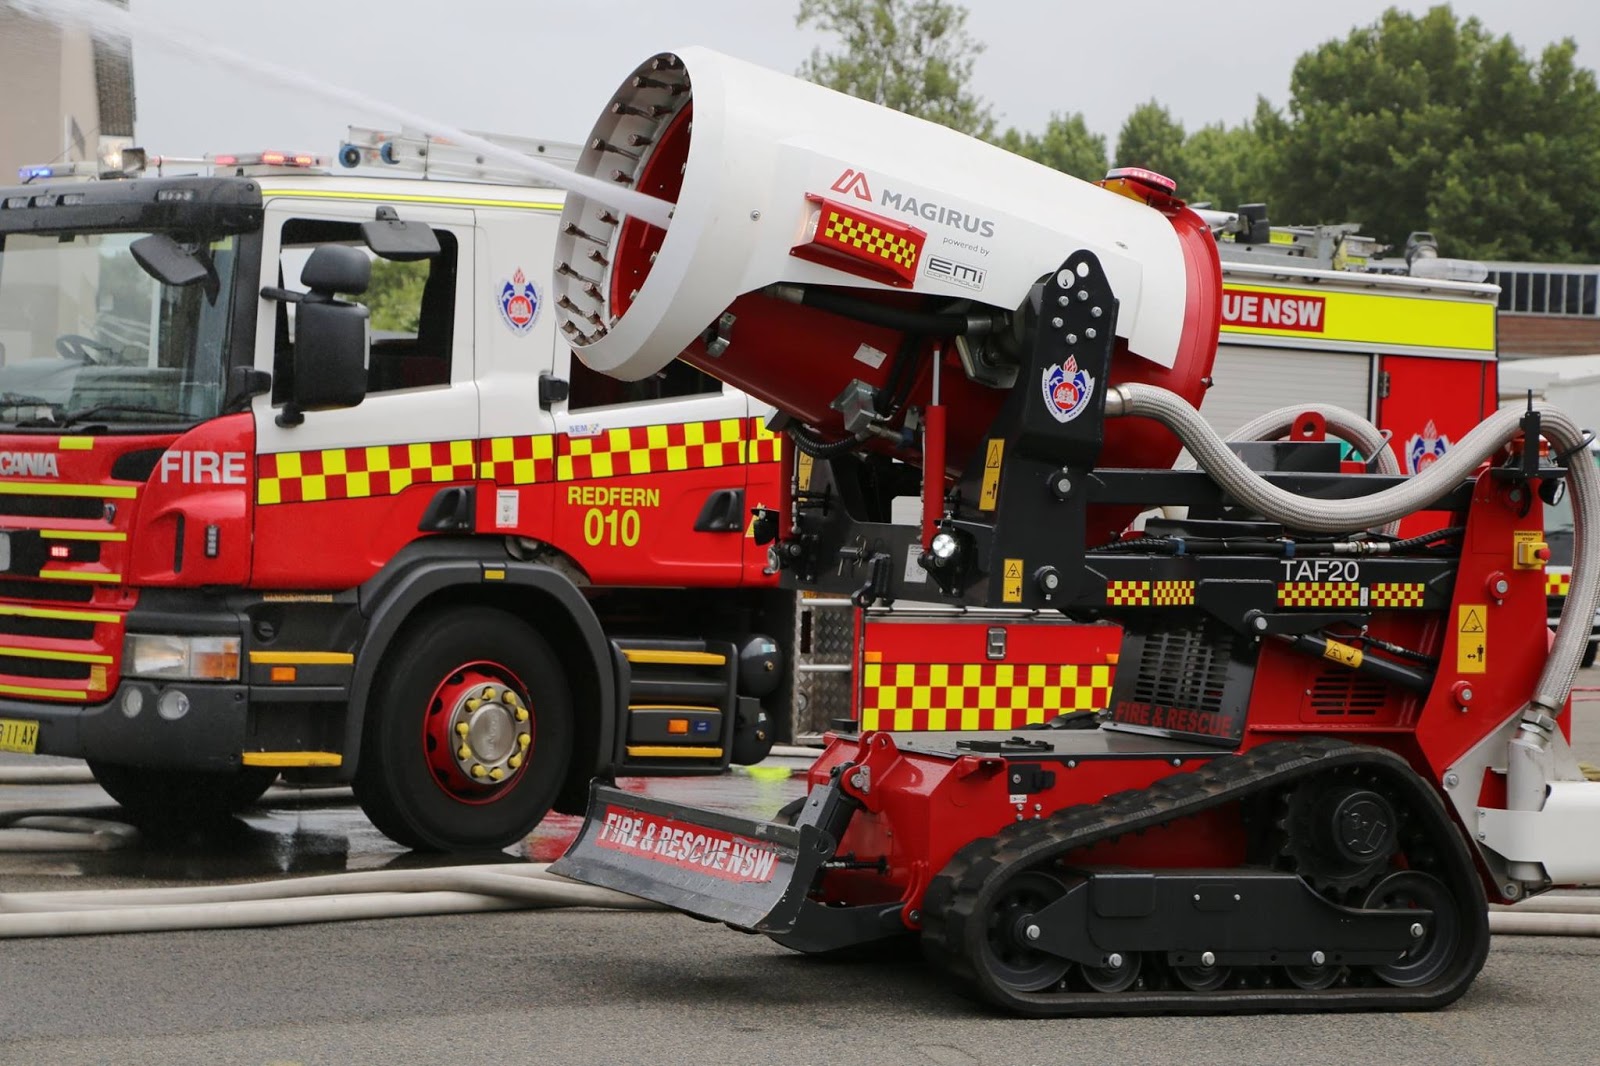 Роботизированные установки пожаротушения. Роботизированный пожарный комплекс taf20. Роботы пожарные Fire Robo. Гусеничный беспилотный пожарный робот LUF 60. Пожарная машинка (20 см) Fire-Fighting vehicle.